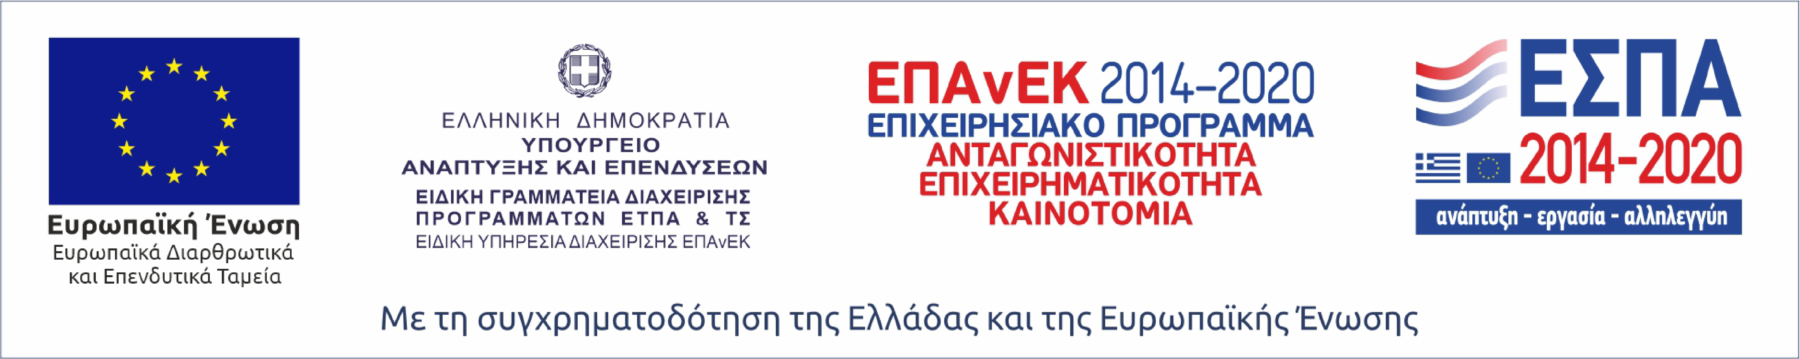 ΕΠΑνΕΚ – ΕΣΠΑ 2014-2020 – Επιχειρησιακό Πρόγραμμα «Ανταγωνιστικότητα, Επιχειρηματικότητα, Καινοτομία»